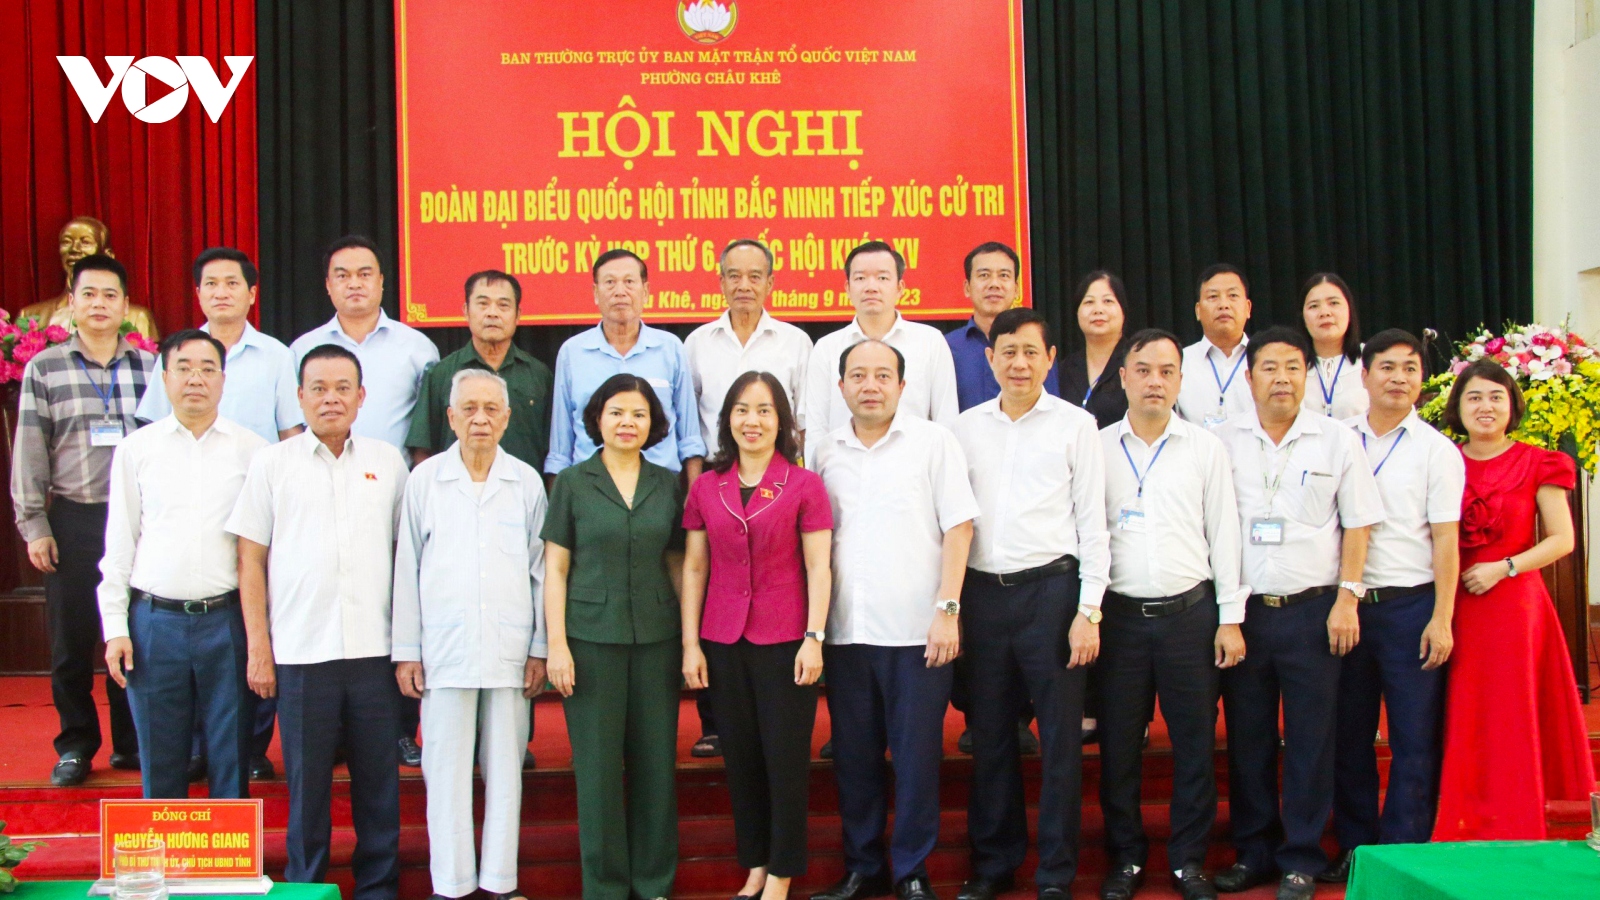 Chủ tịch tỉnh Bắc Ninh tiếp xúc cử tri phường Châu Khê